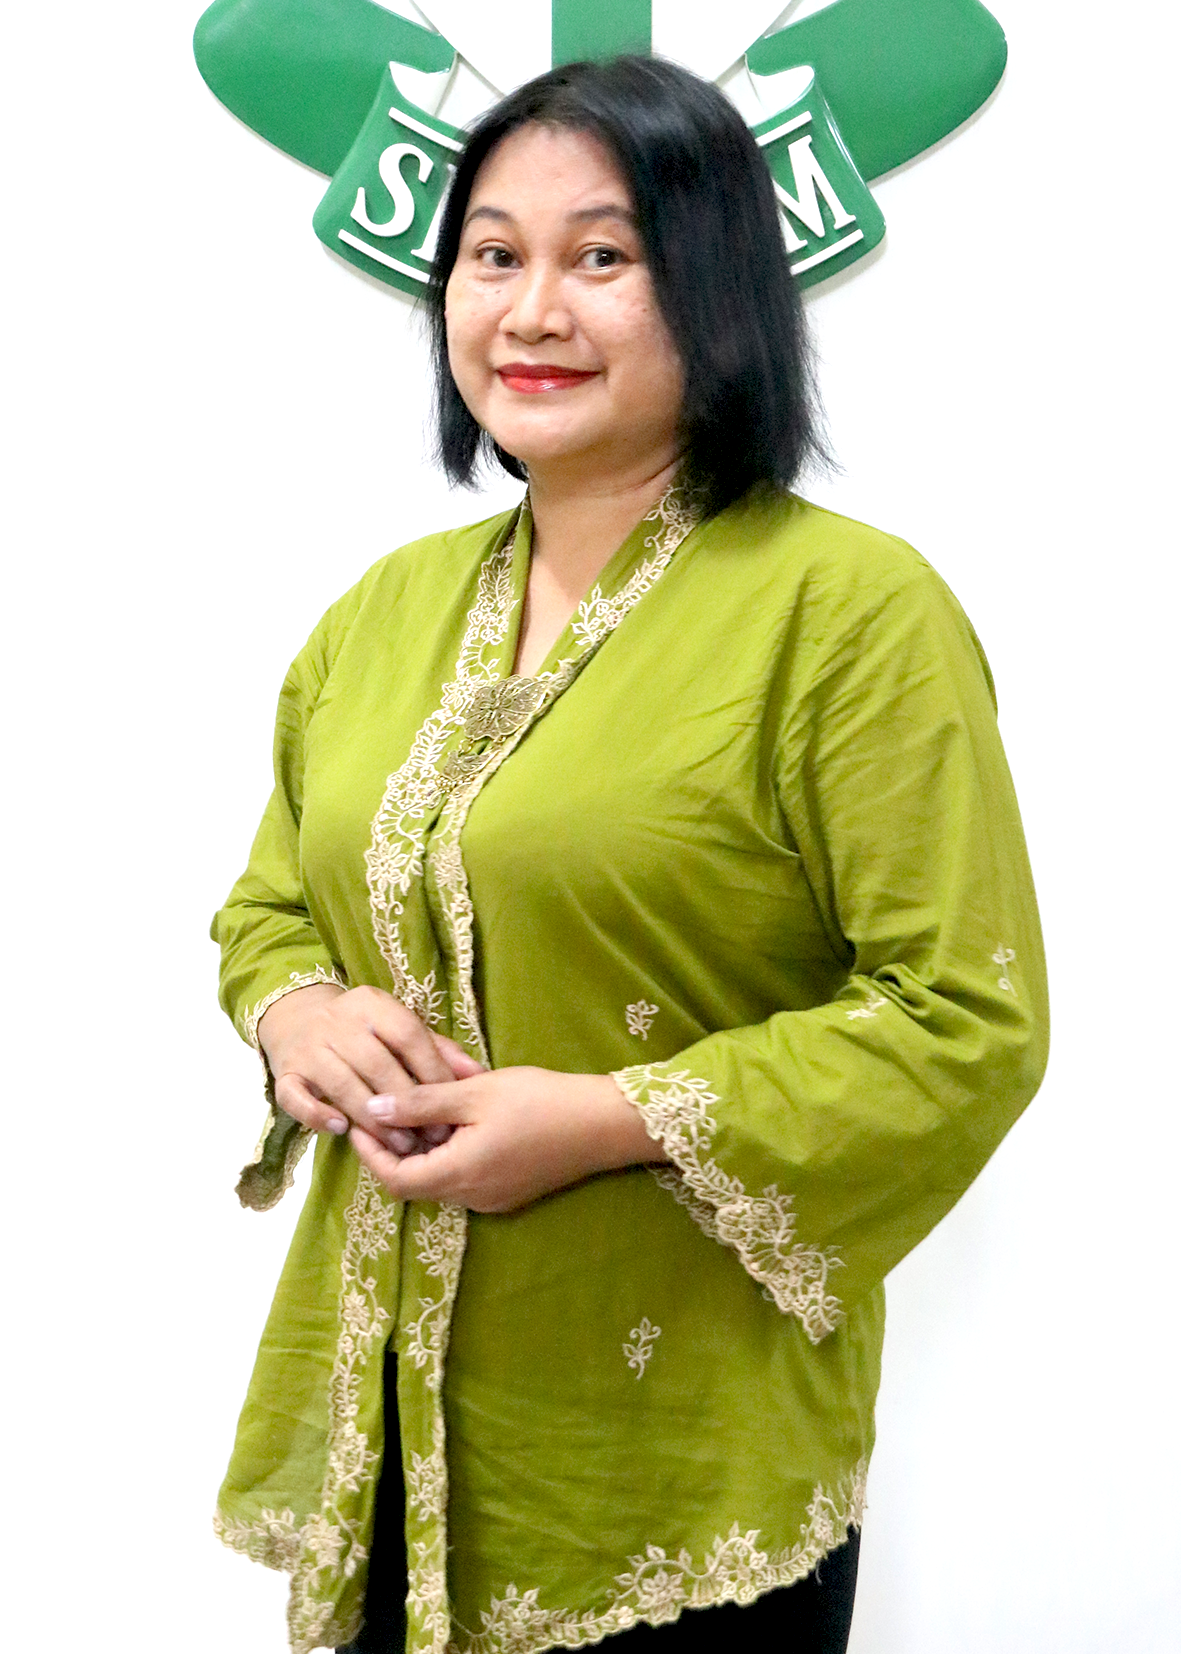 Maria Catur Setyanti, M.P.d